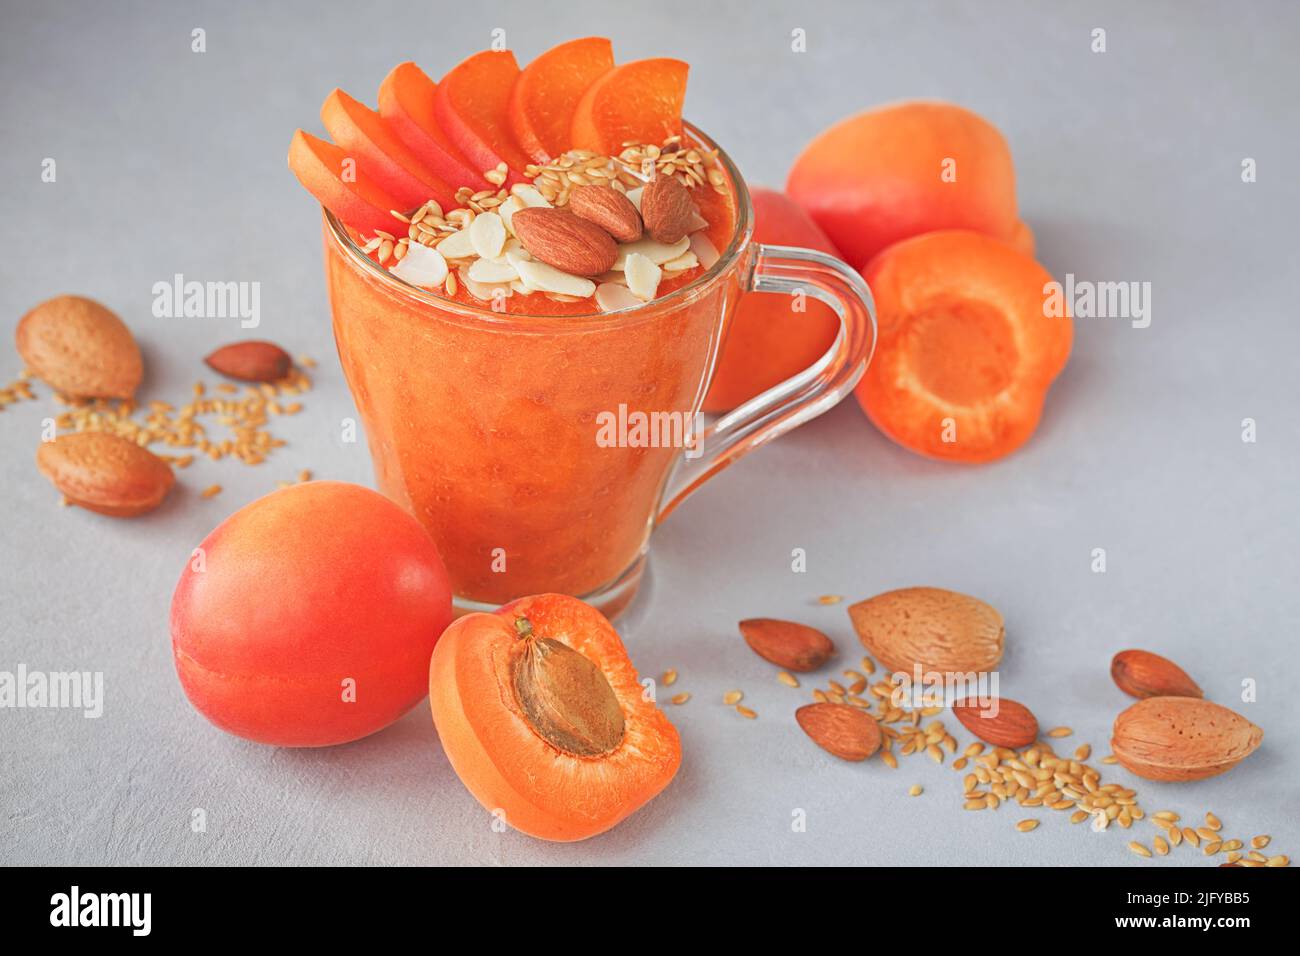 Purée d'abricot frais ou smoothie aux amandes sur fond rustique clair. Concept d'alimentation saine Banque D'Images